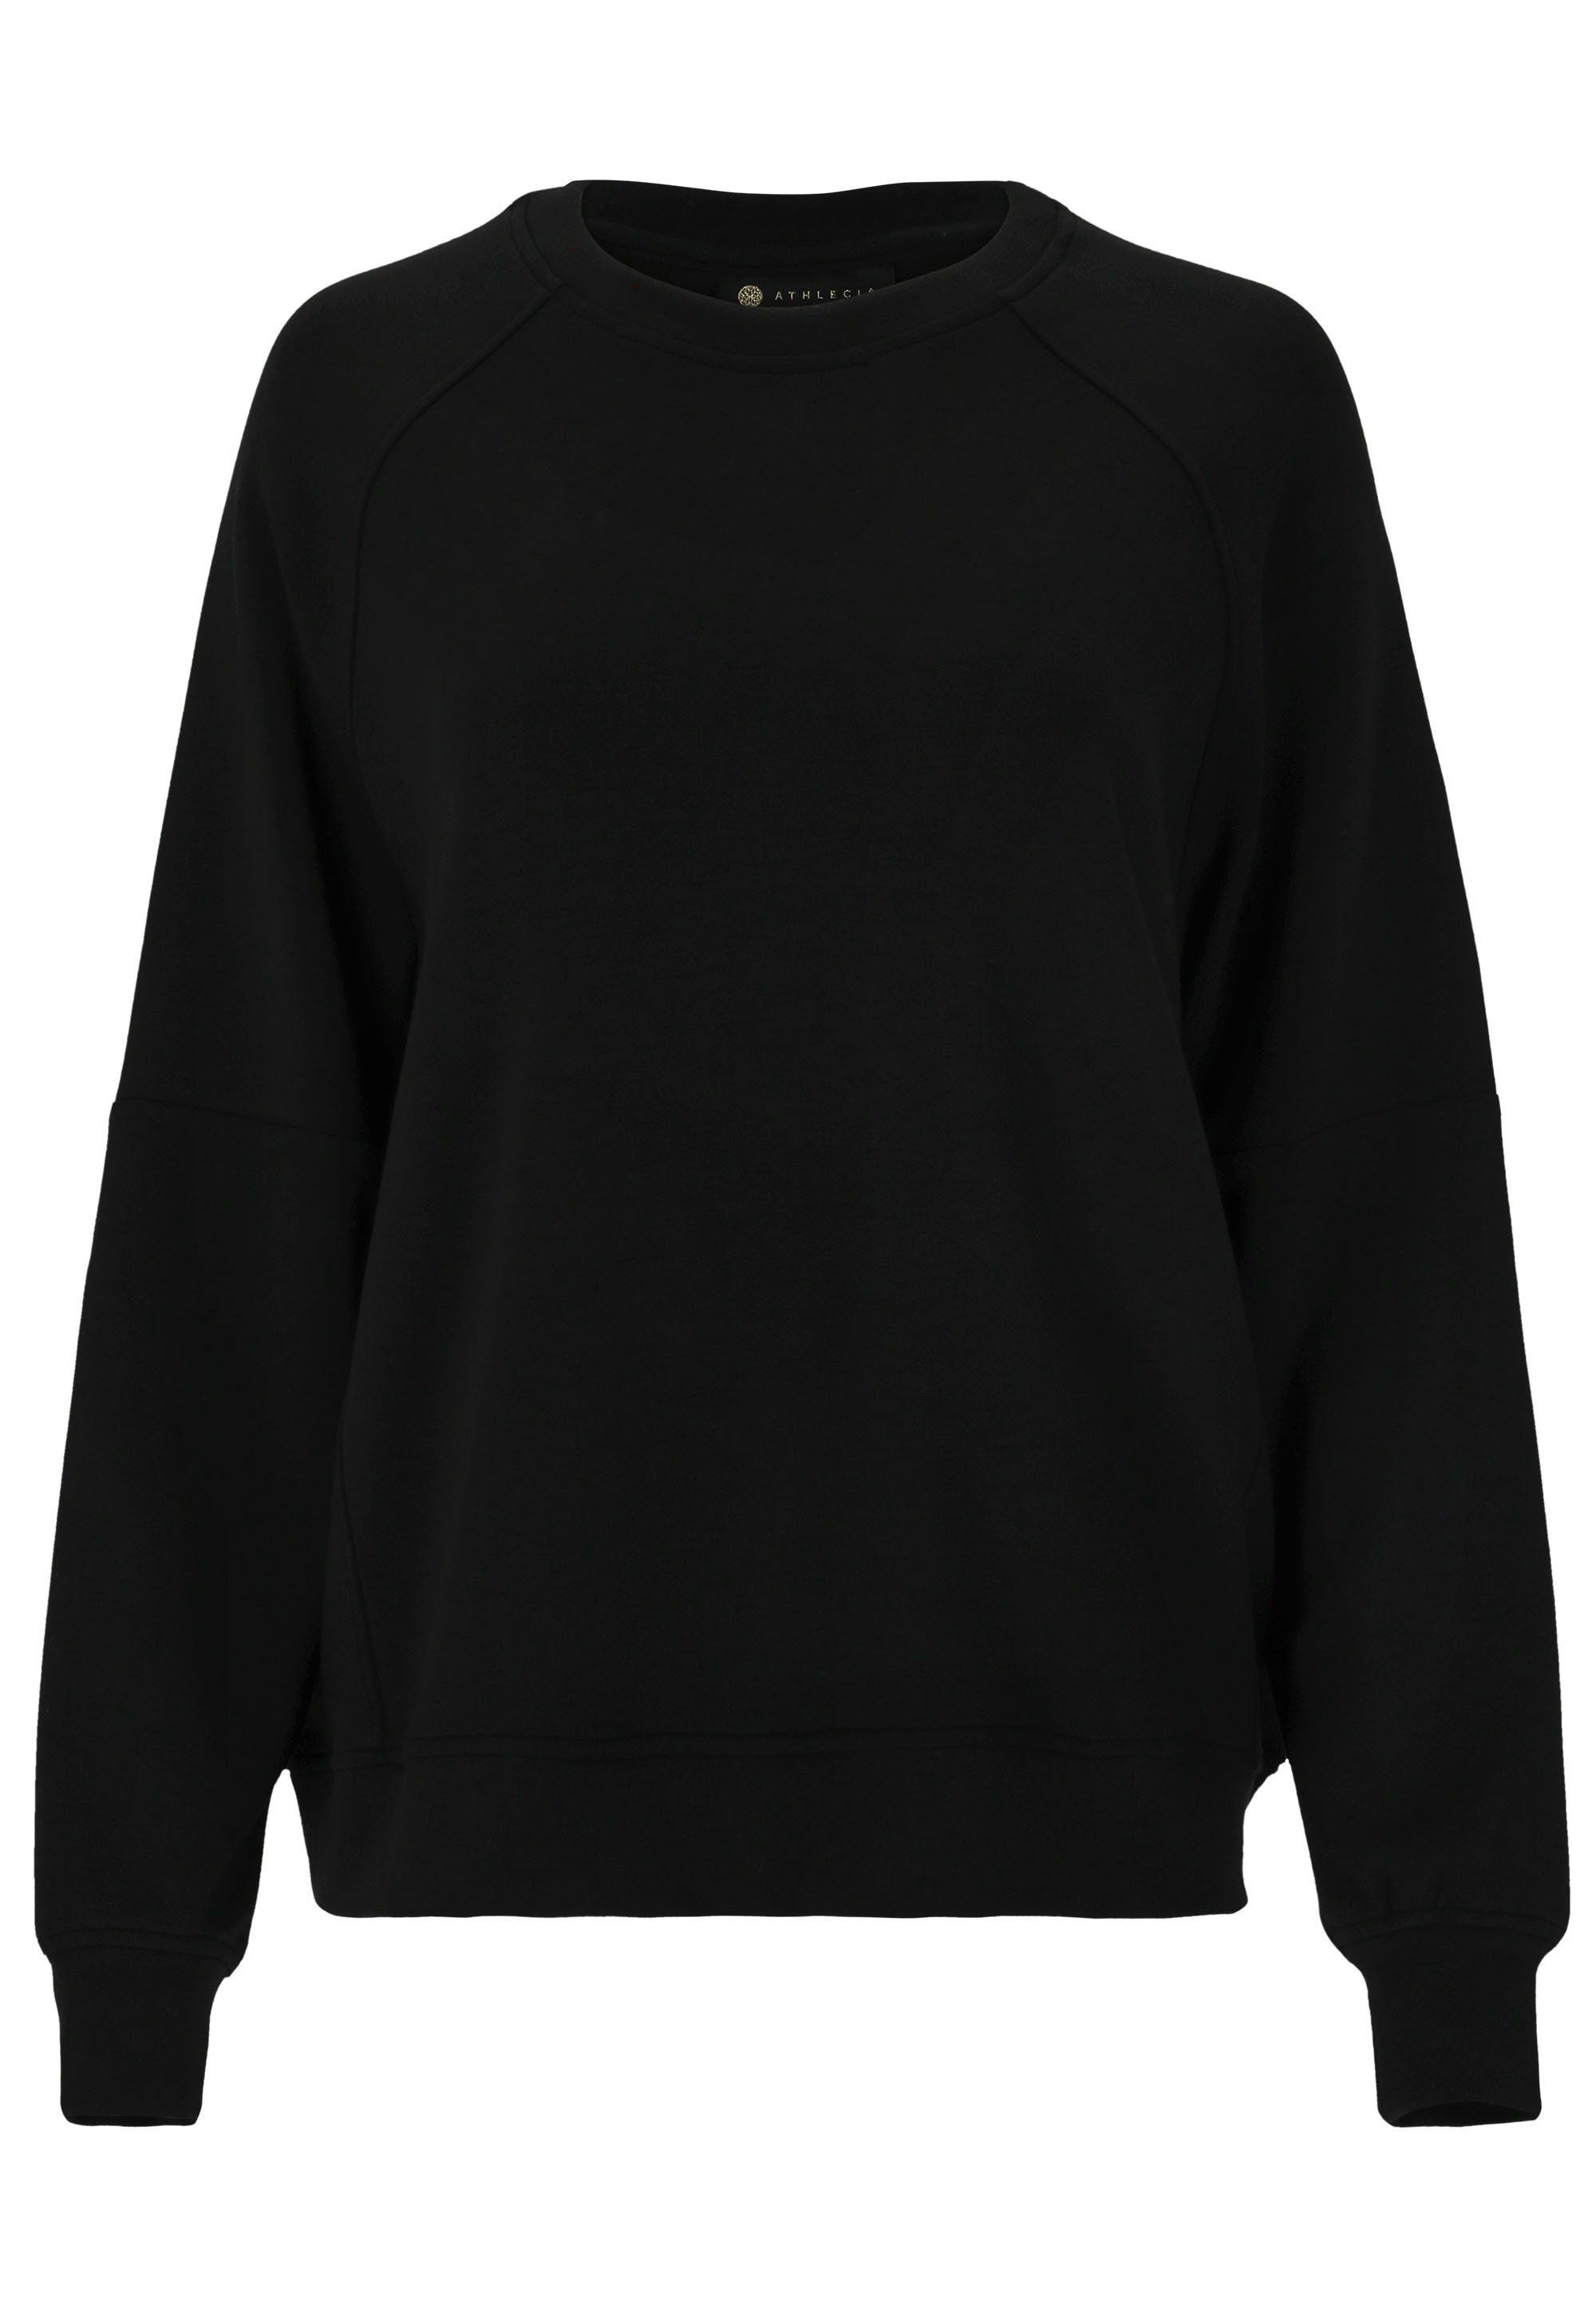 schwarz aus weichem Material ATHLECIA extra Jacey Sweatshirt